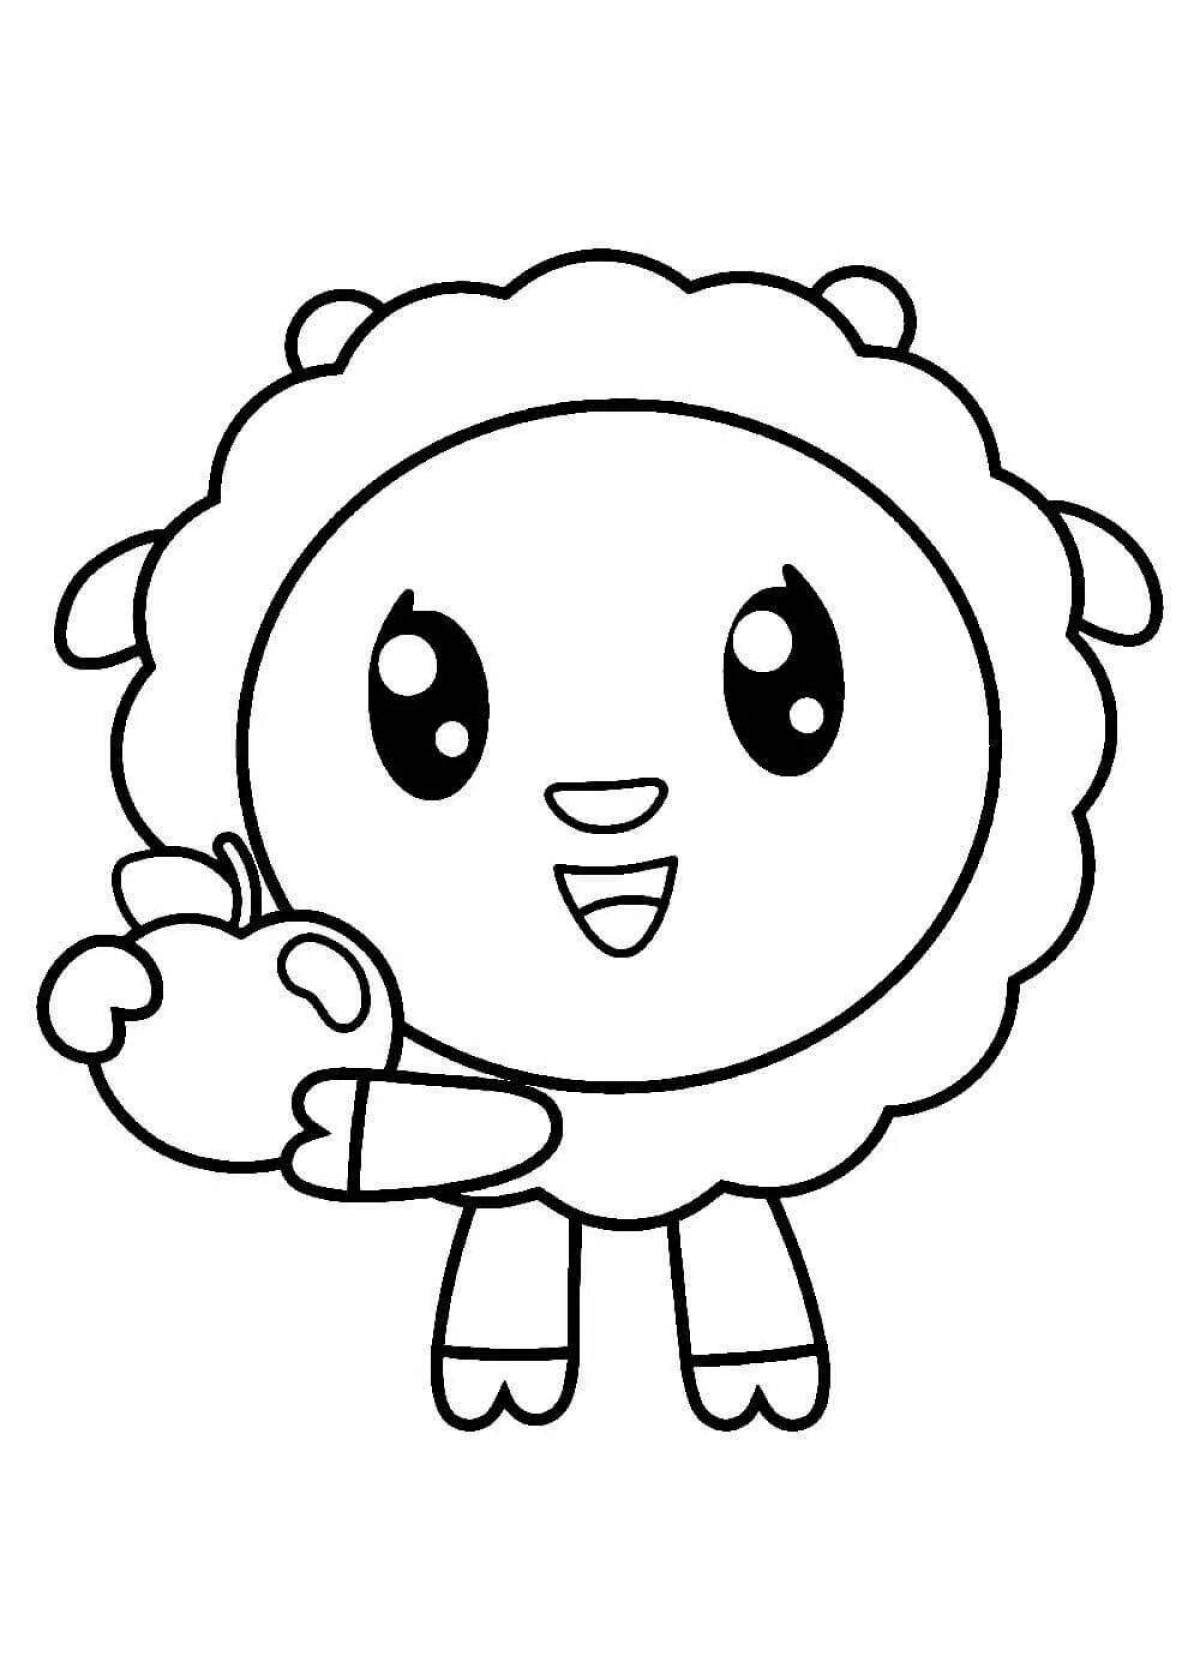 Coloring page charming lamb